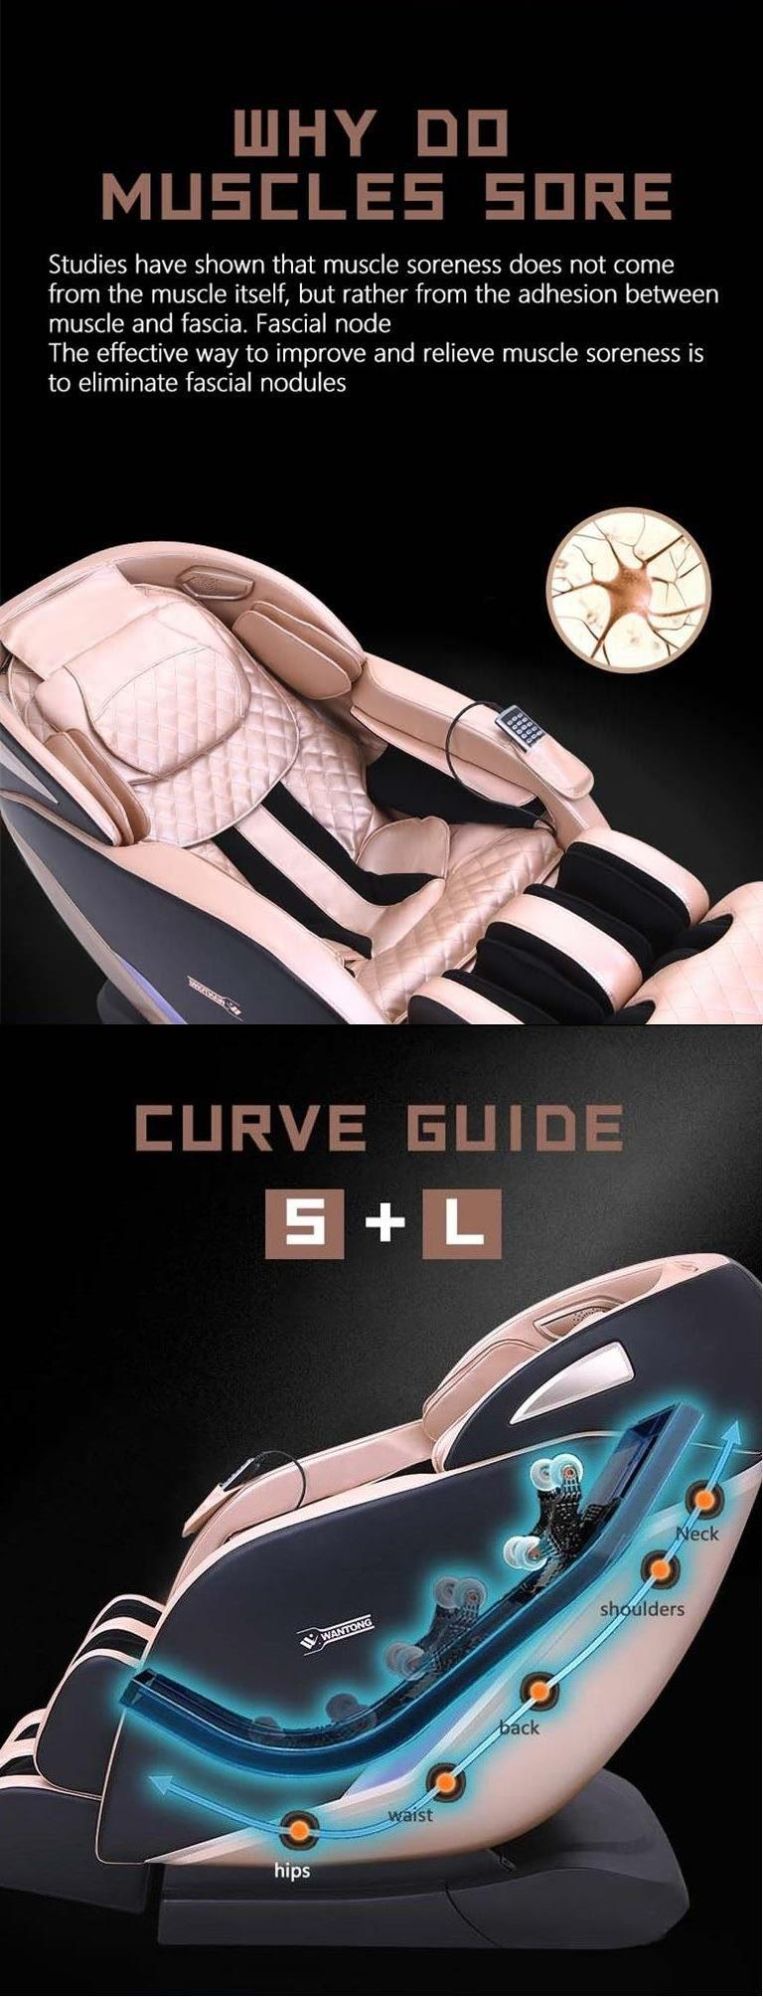 Amazon Wholesale New Portable Cheap Luxury Healthcare Shiatsu Vending 4D Zero Gravity Massager